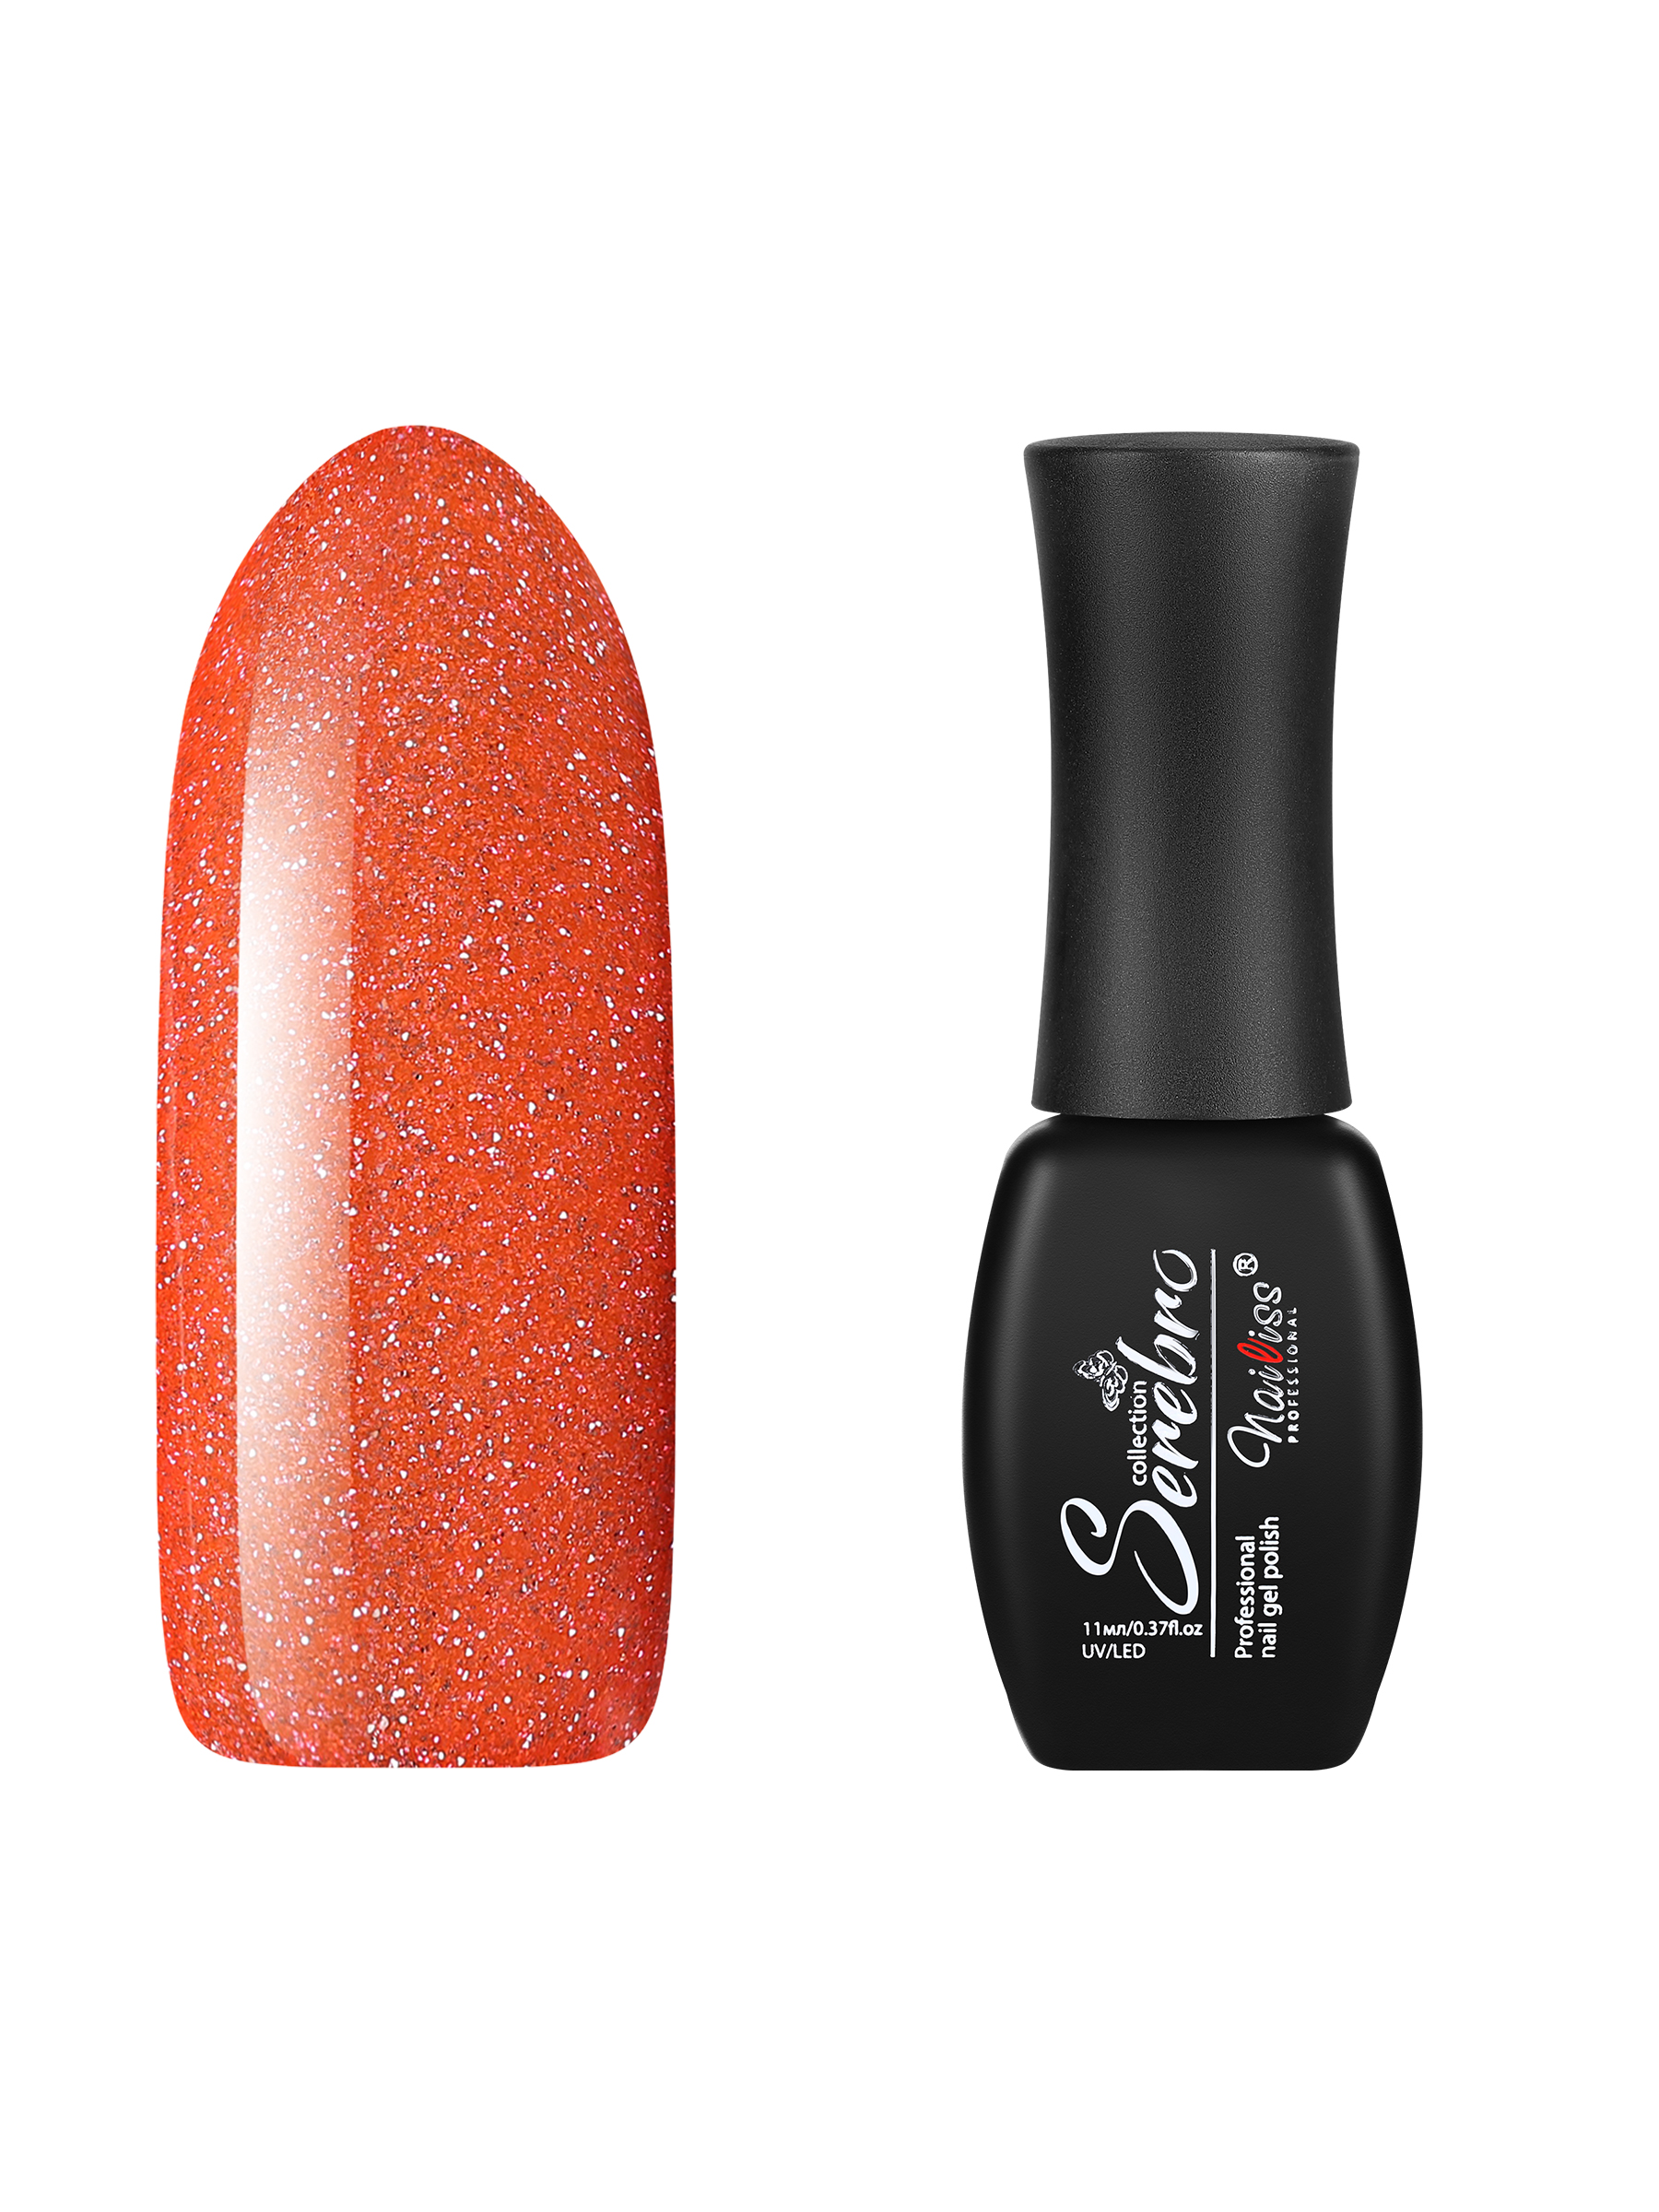 Гель-лак для ногтей Serebro с блестками Glitter Flash светоотражающий, оранжевый, 11 мл второй альбом rocket punch flash